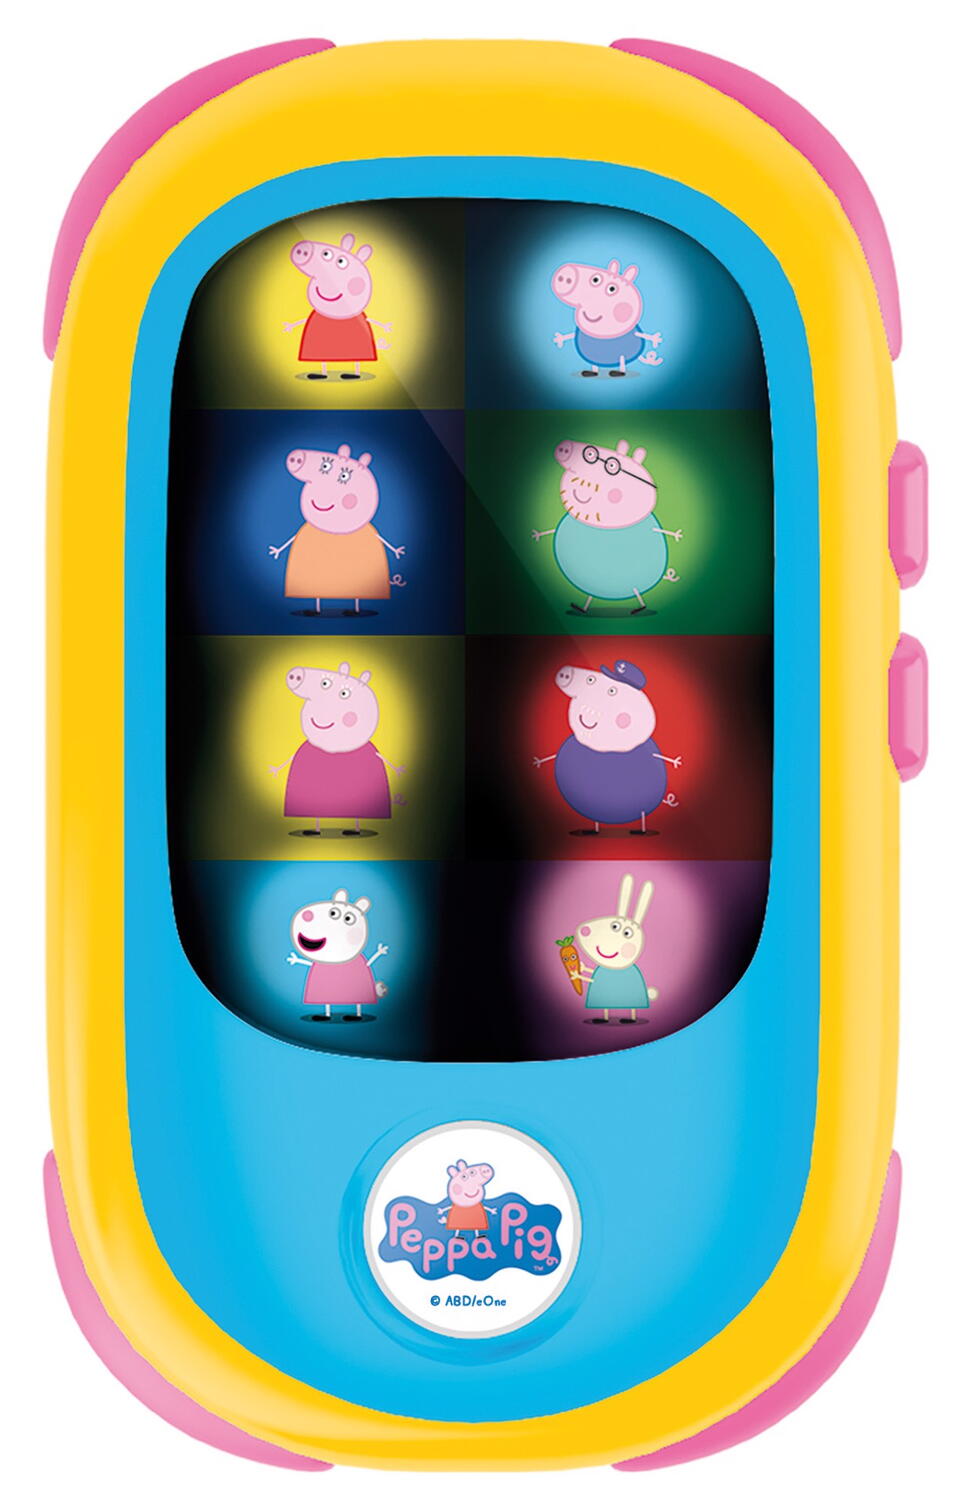 Primul meu smartphone - Peppa Pig